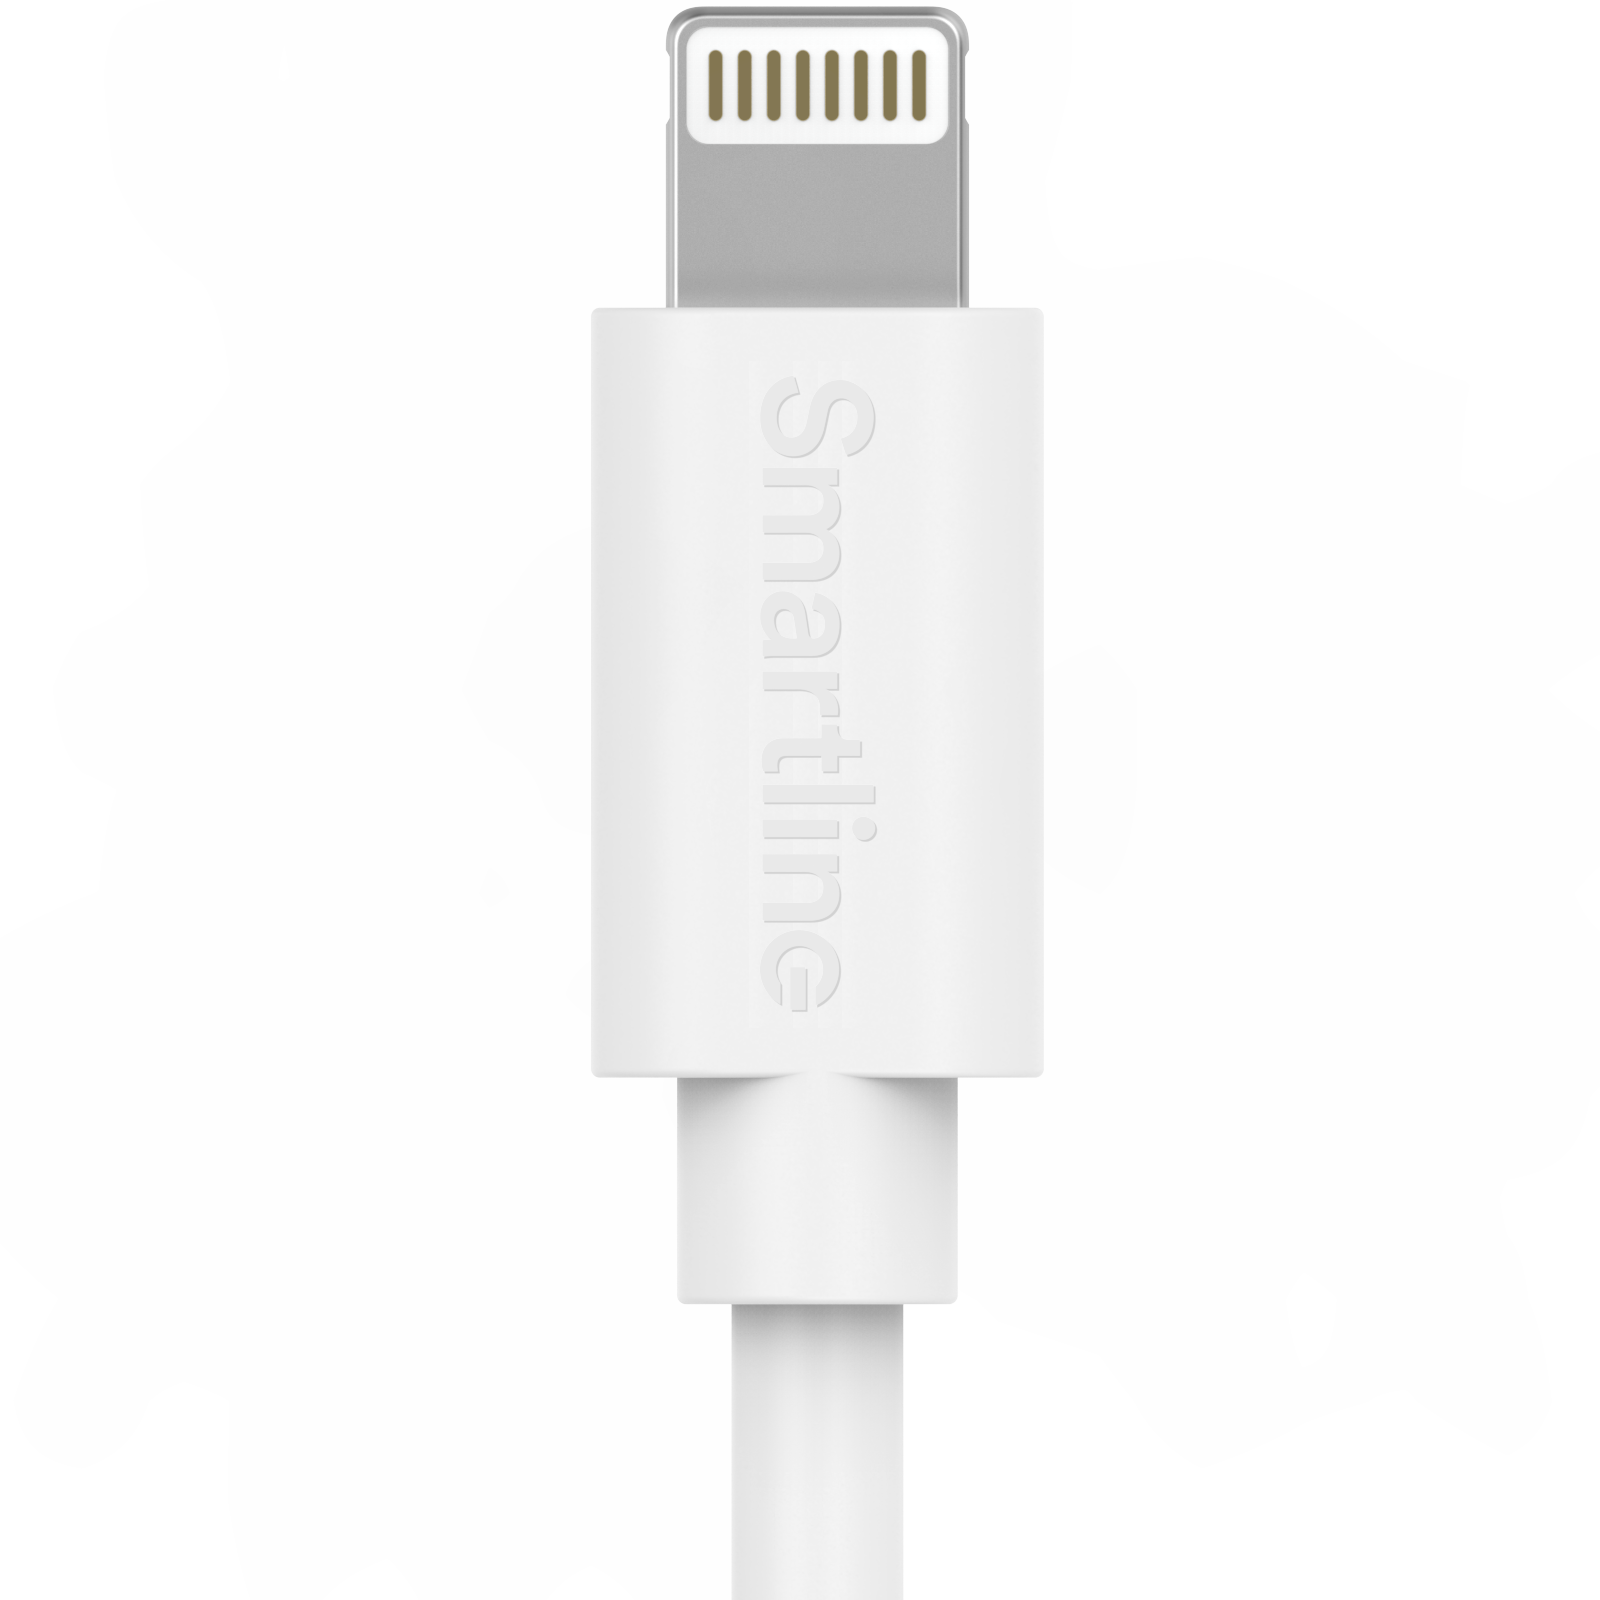 Chargeur complet pour iPhone 7 - Câble de 2m et chargeur mural - Smartline